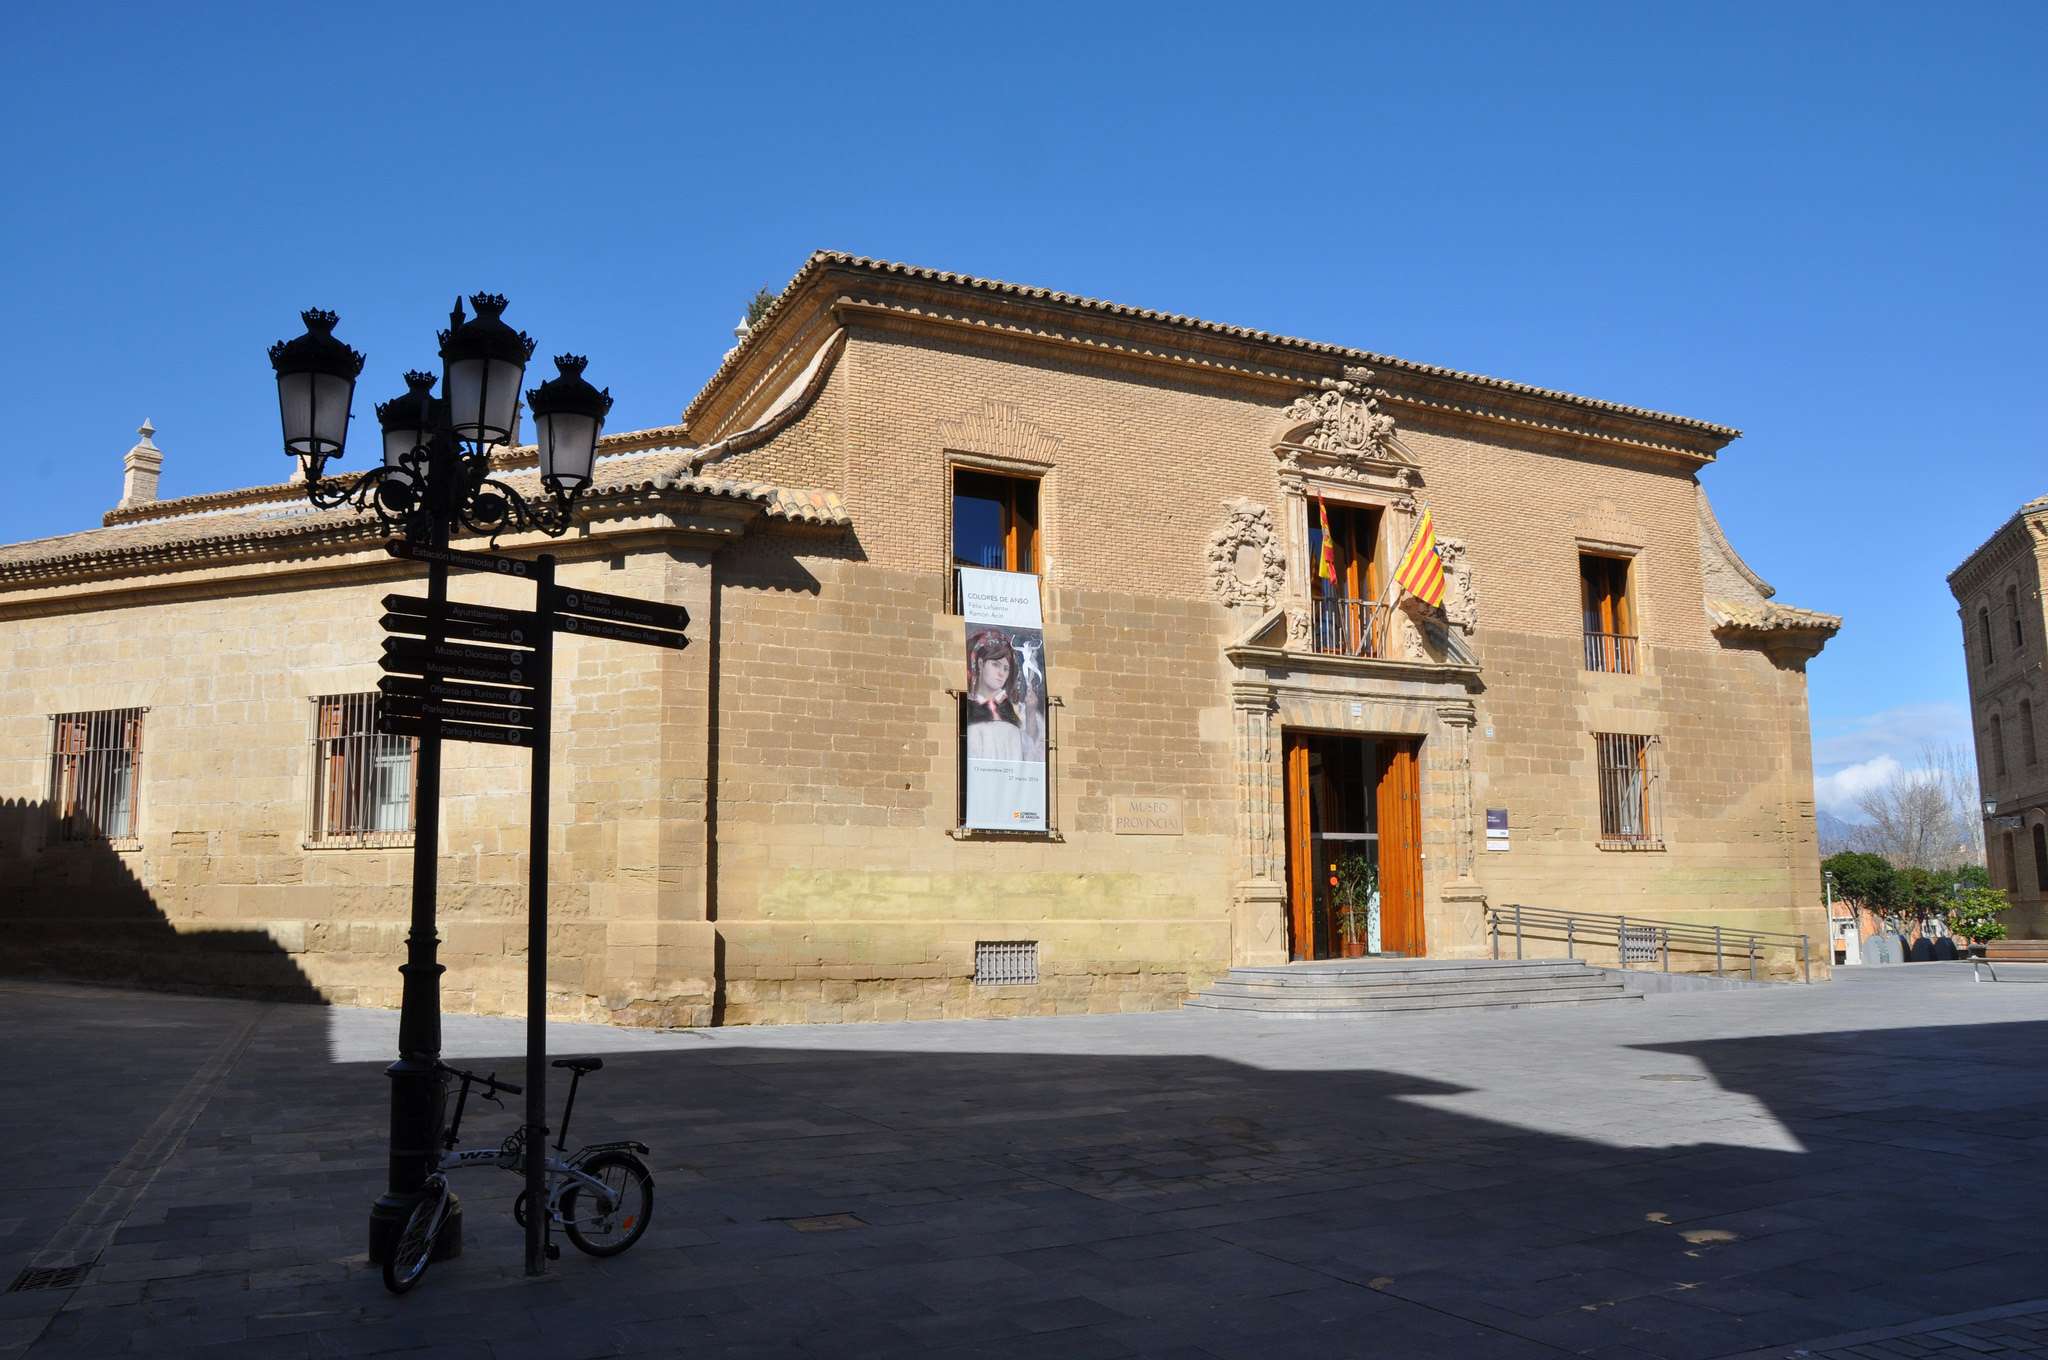 Museo de Huesca de https://www.flickr.com/photos/13687715@N08/